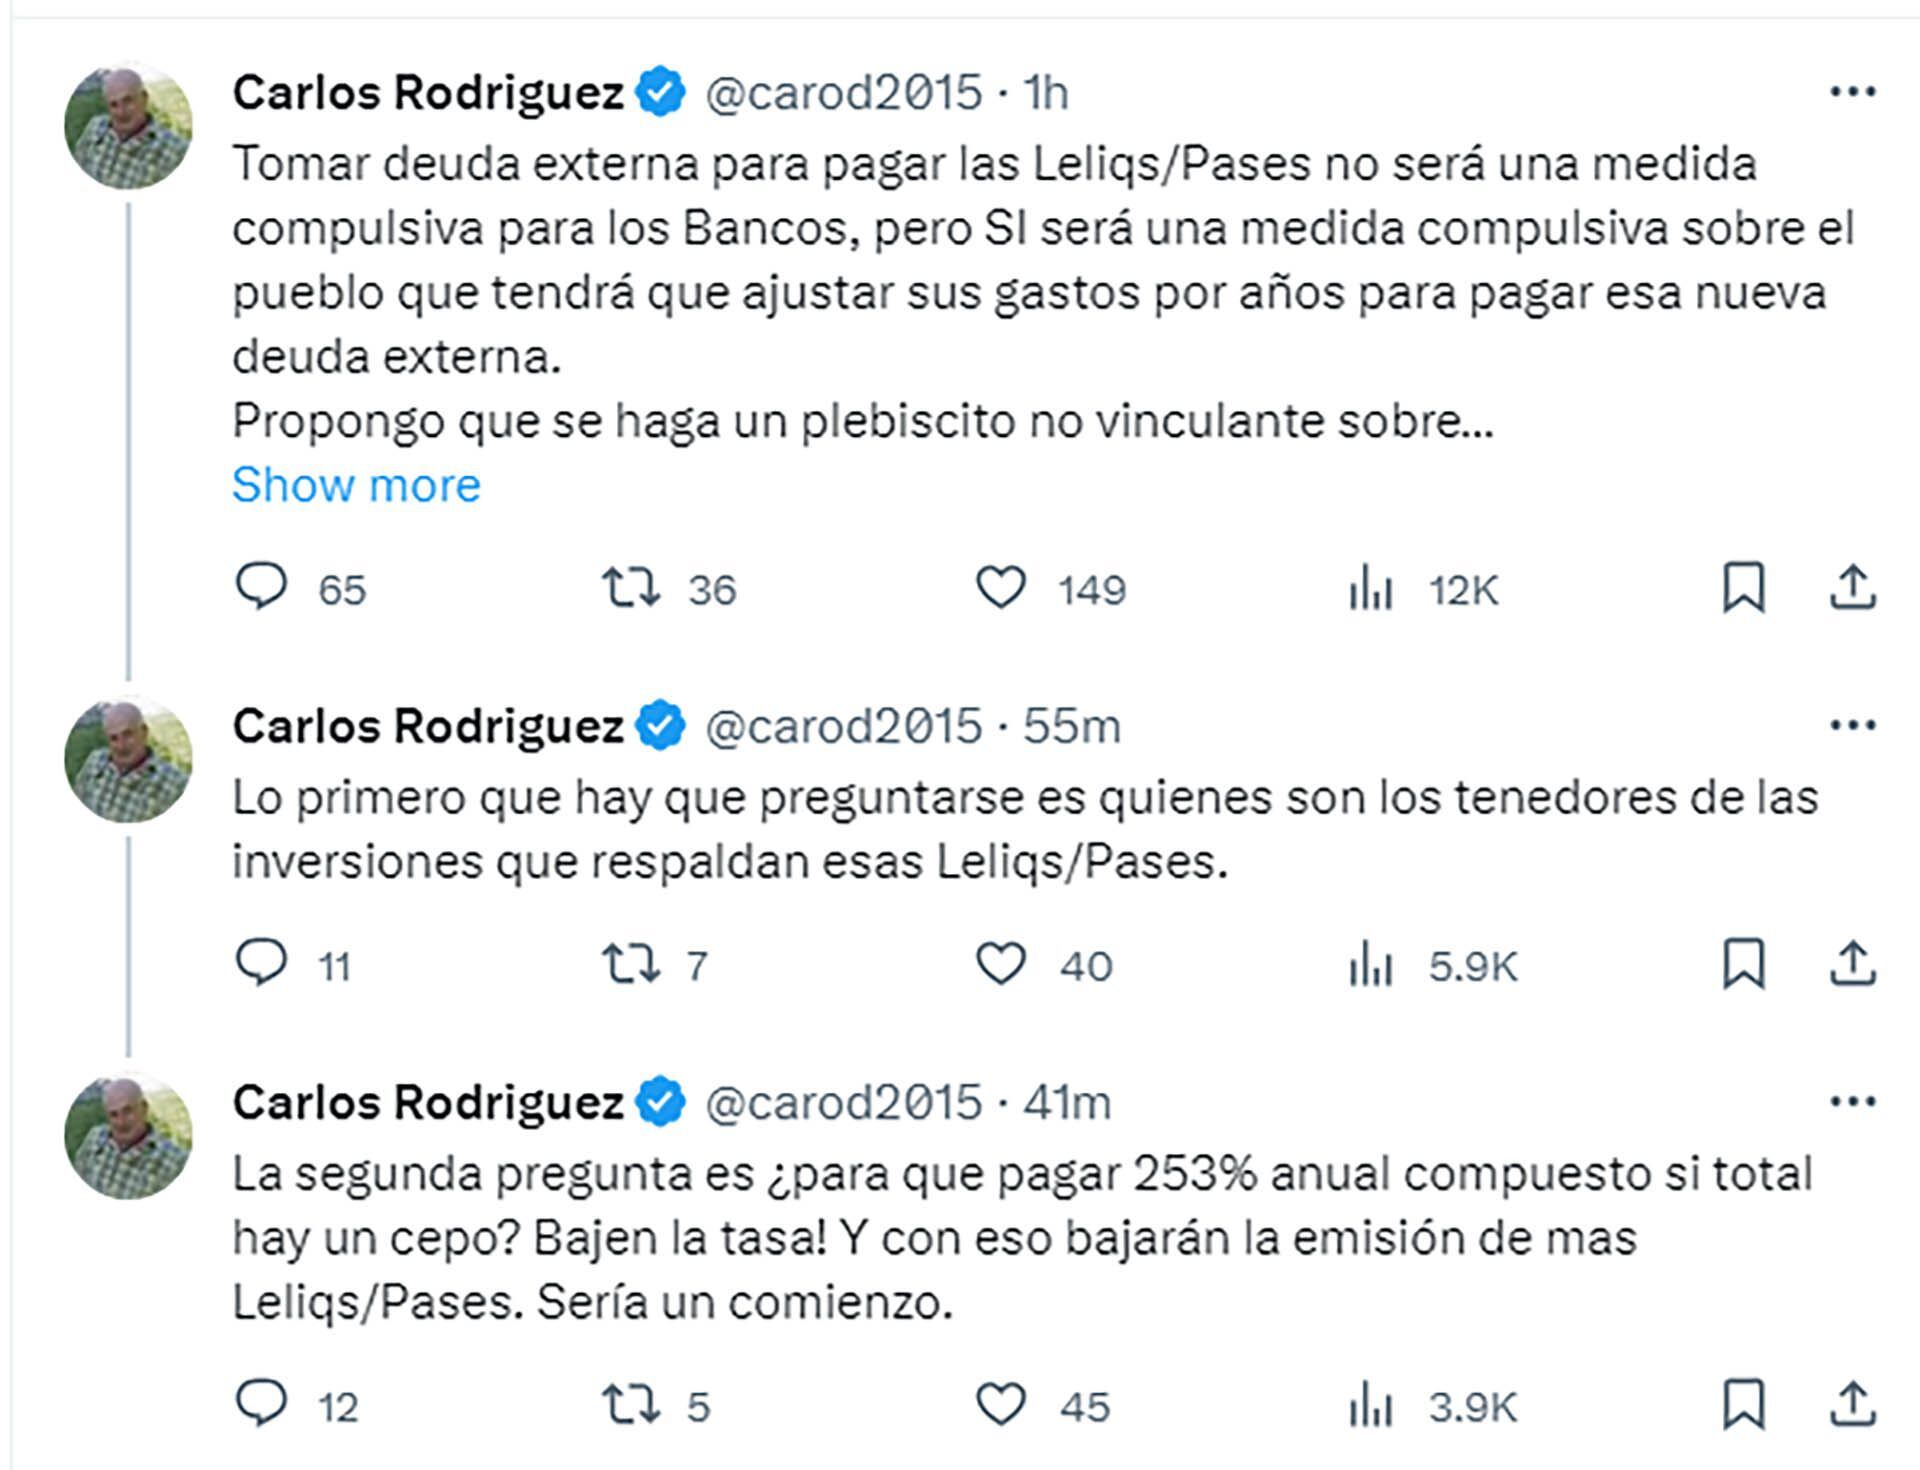 Carlos Rodríguez ventila sus diferencias con Milei